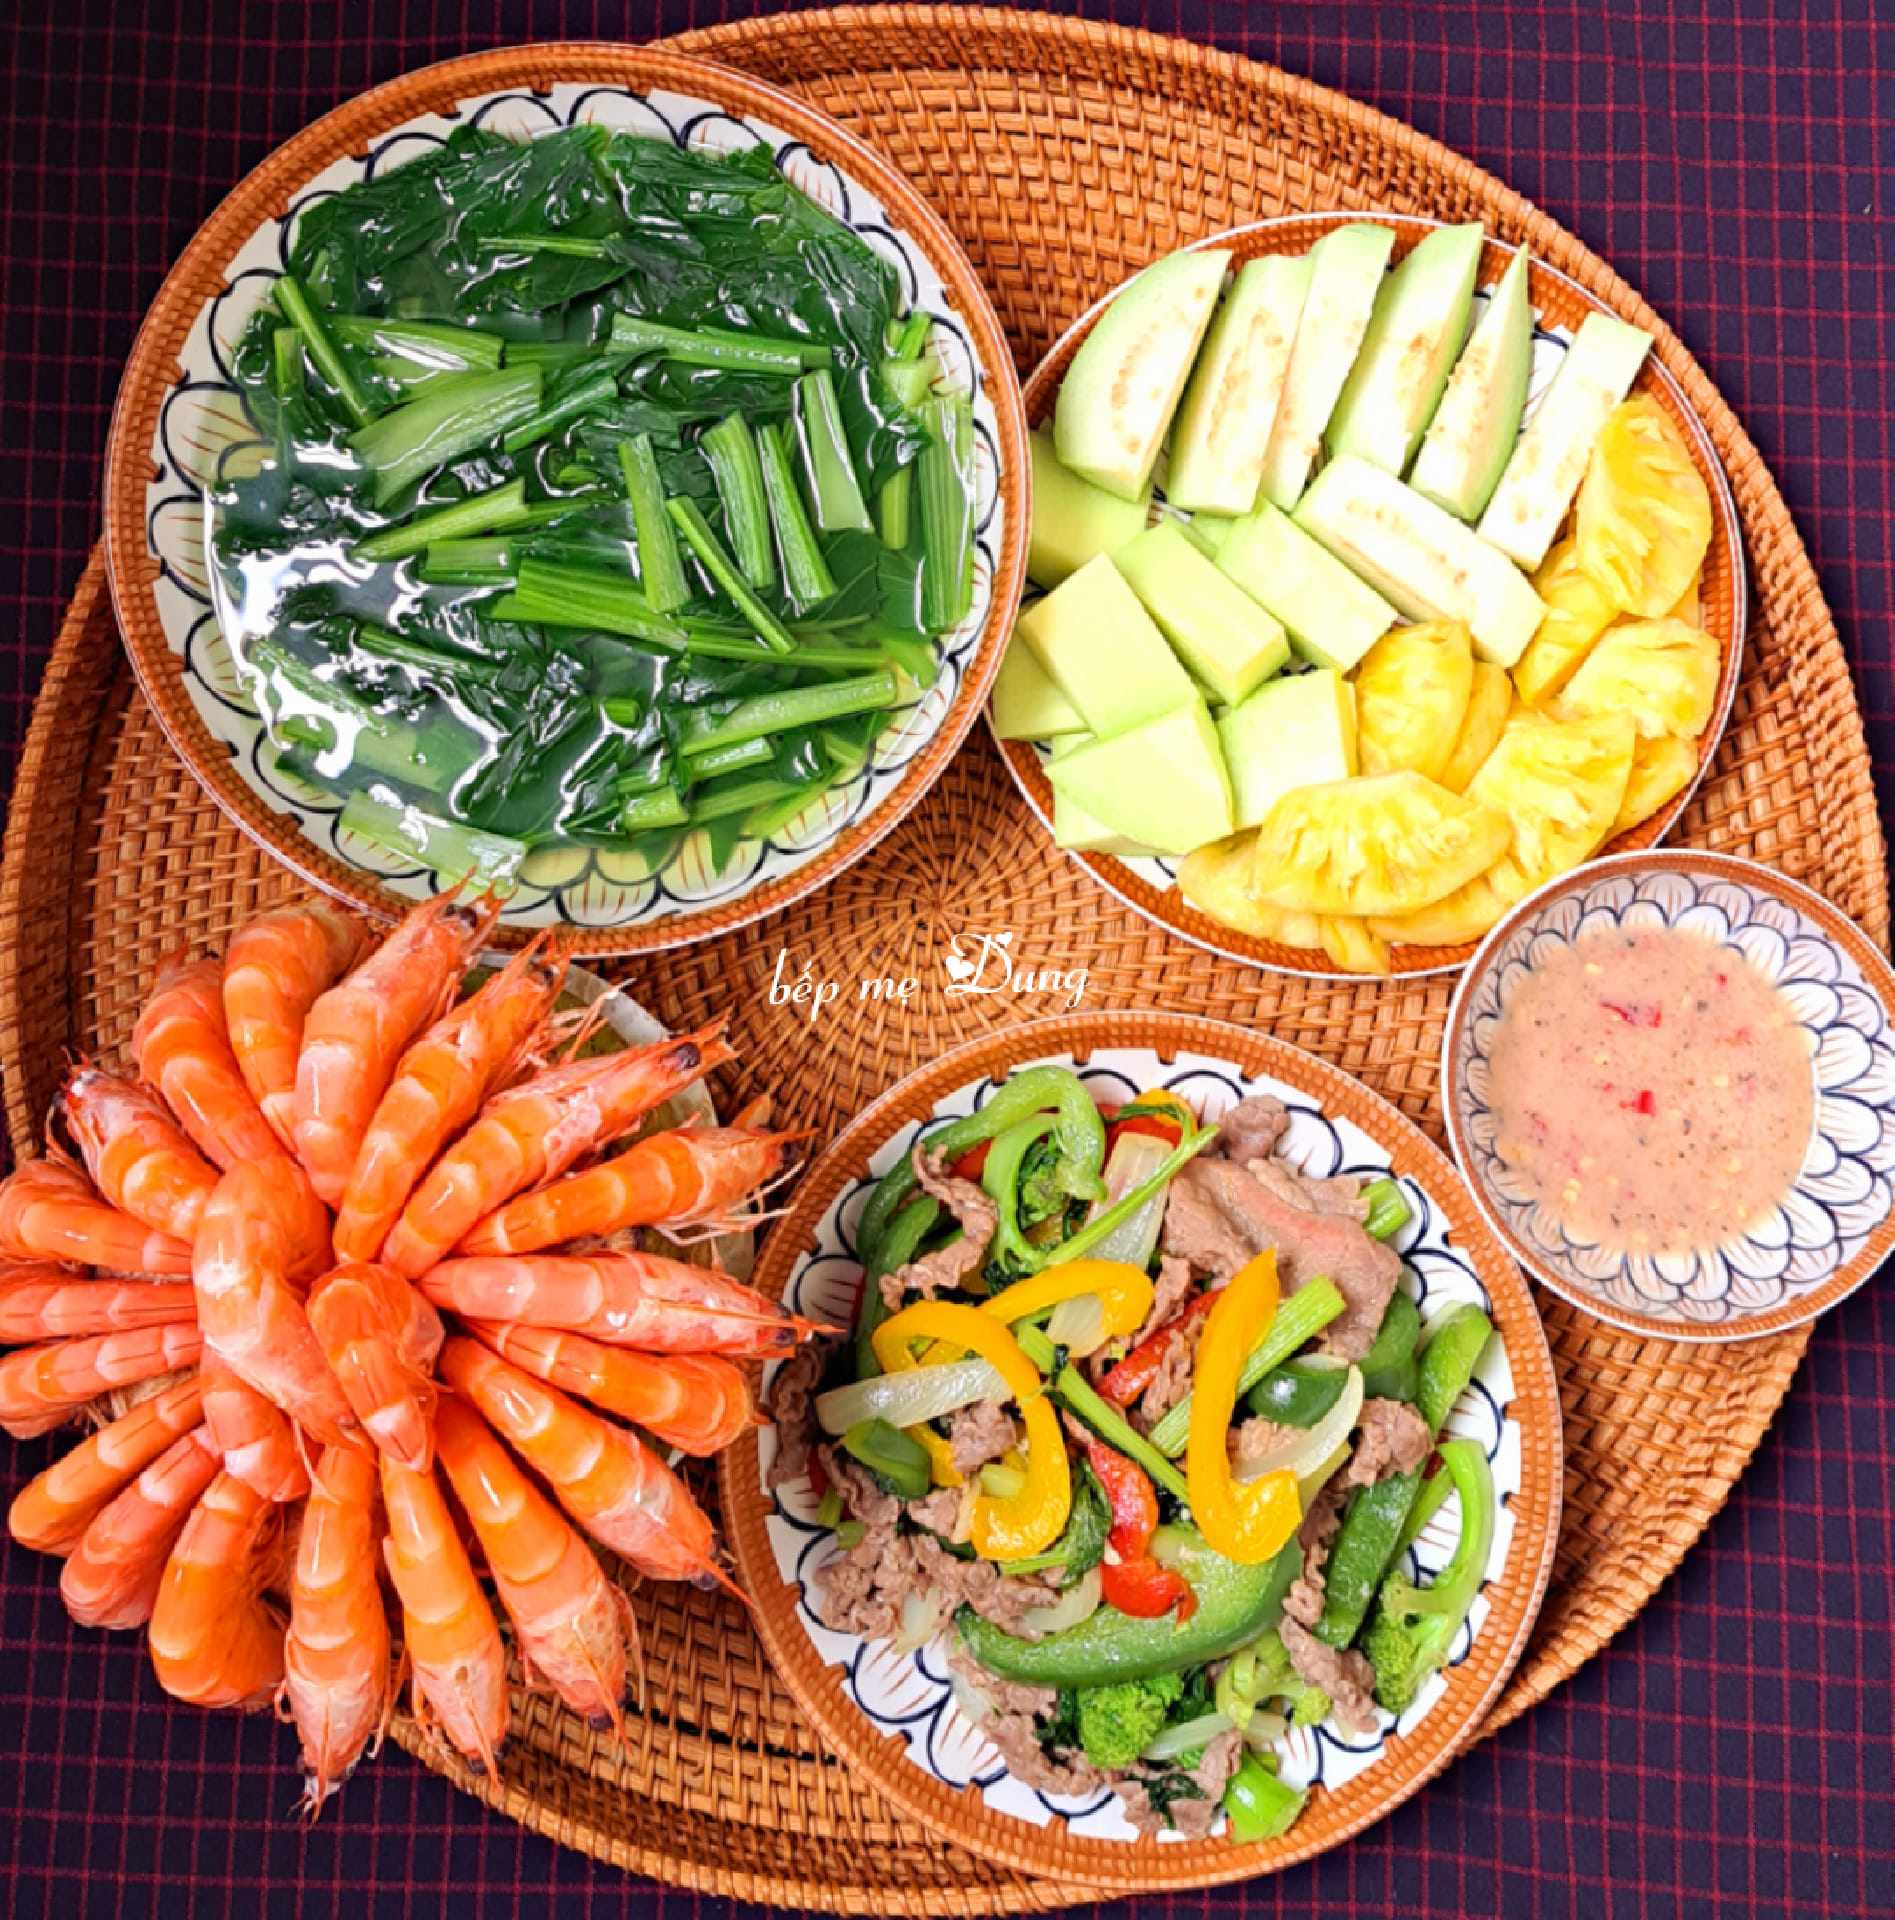 Tôm luộc nước dừa + Ớt chuông xào thịt bò + Canh rau cải ngọt + Trái cây tráng miệng